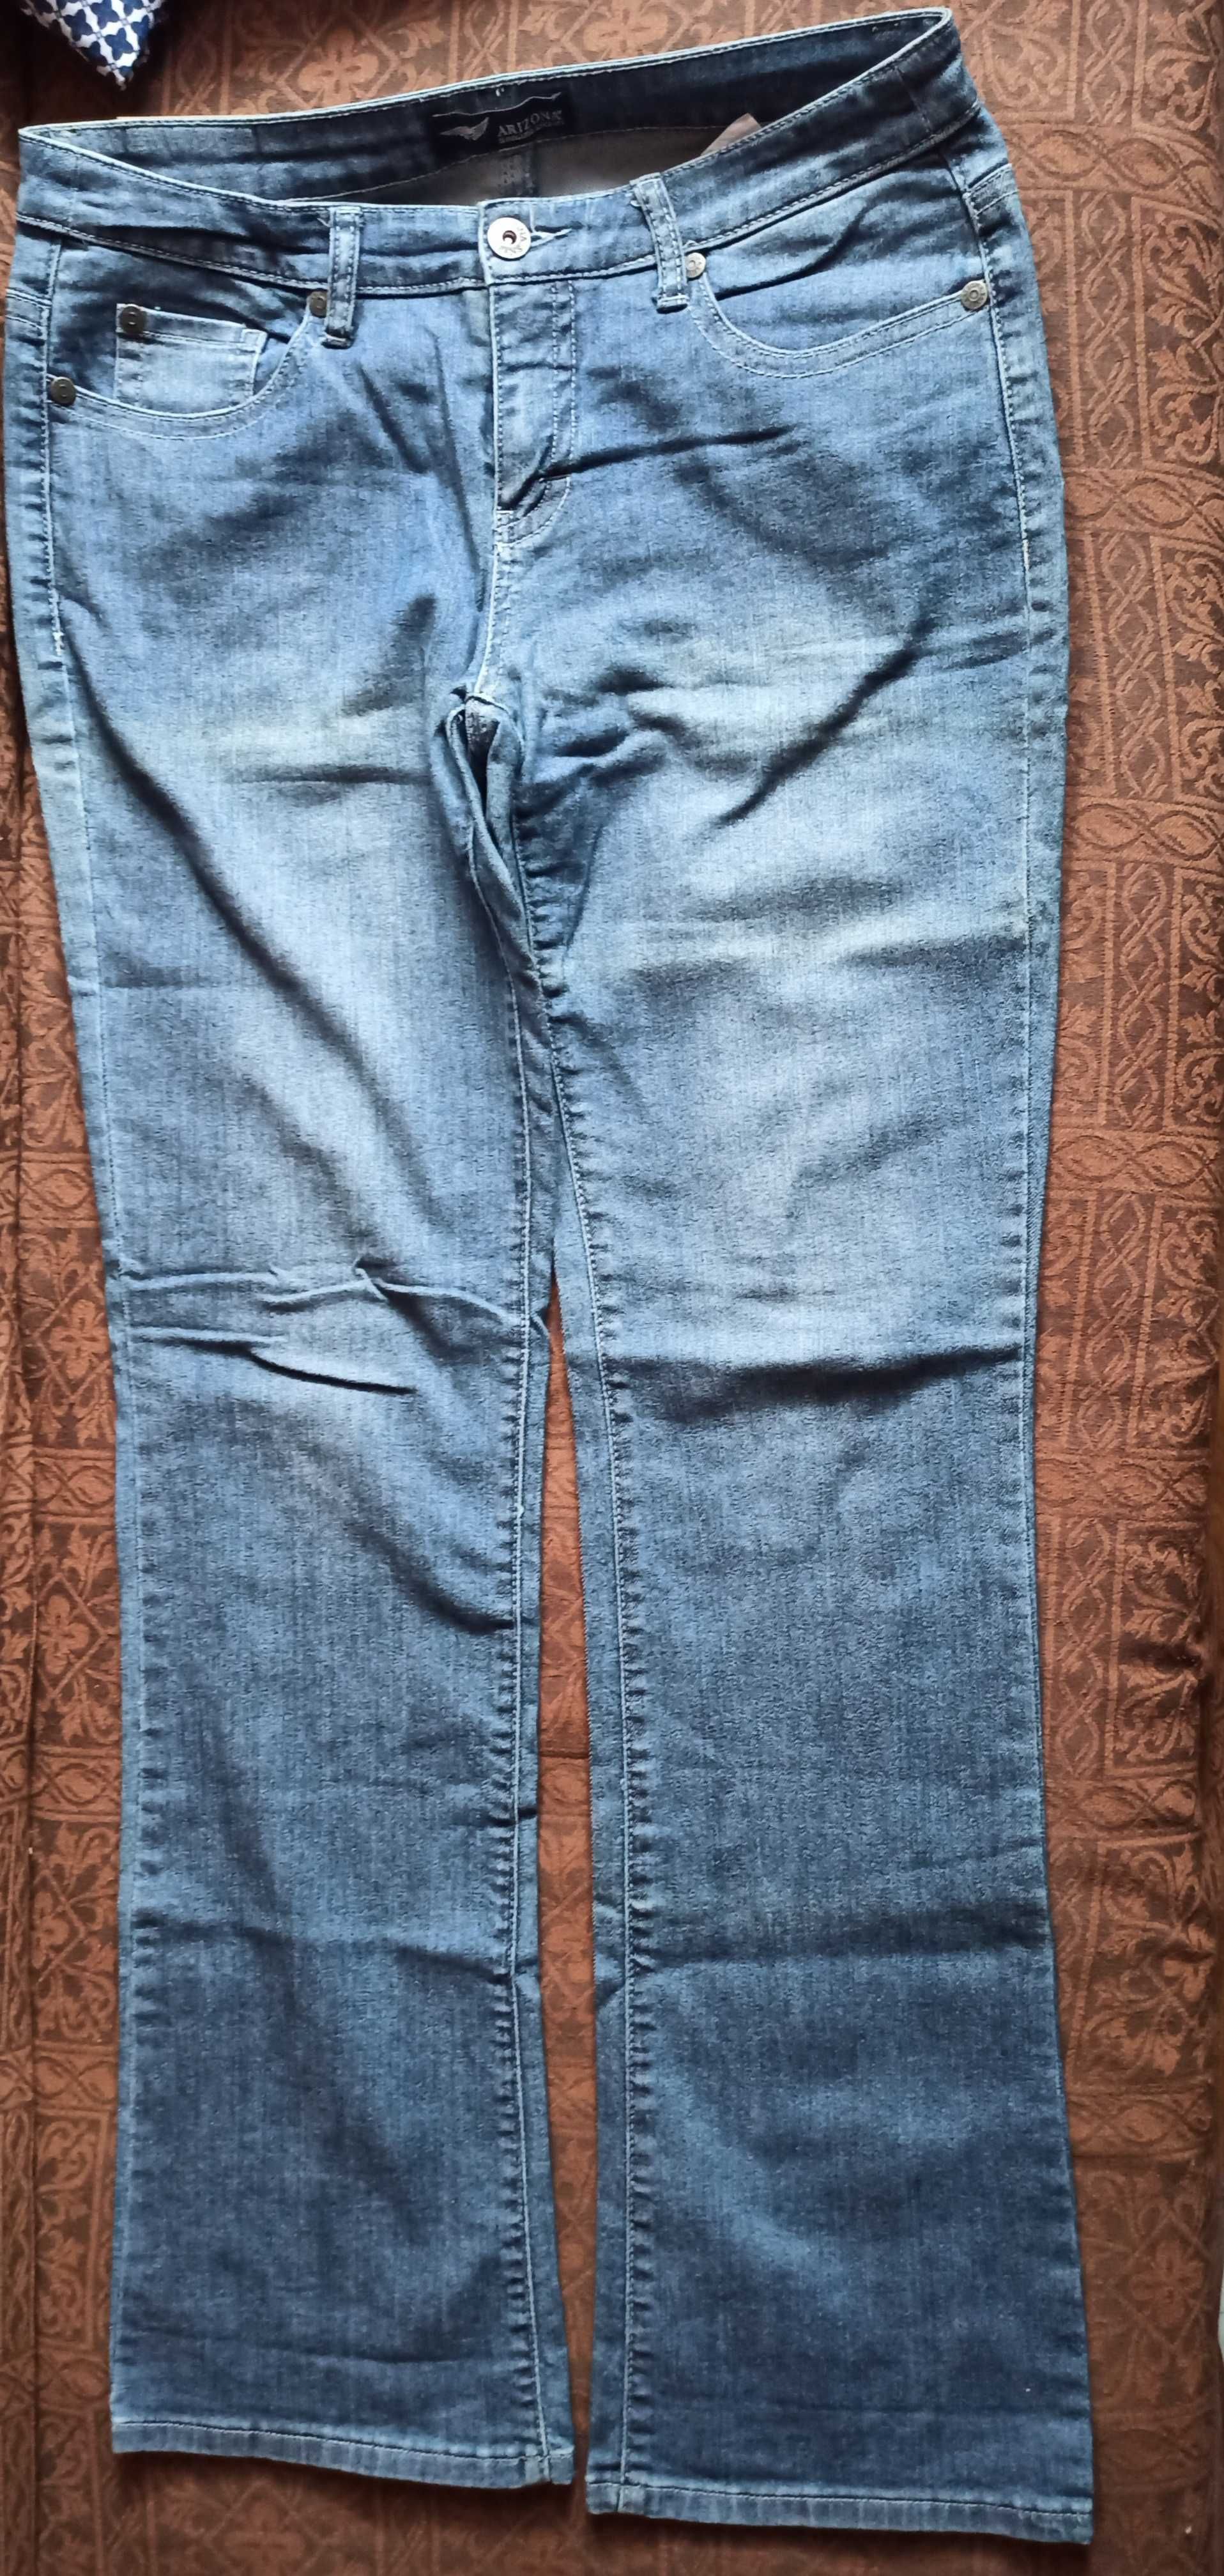 Arizona spodnie jeansowe r. 42 (84)